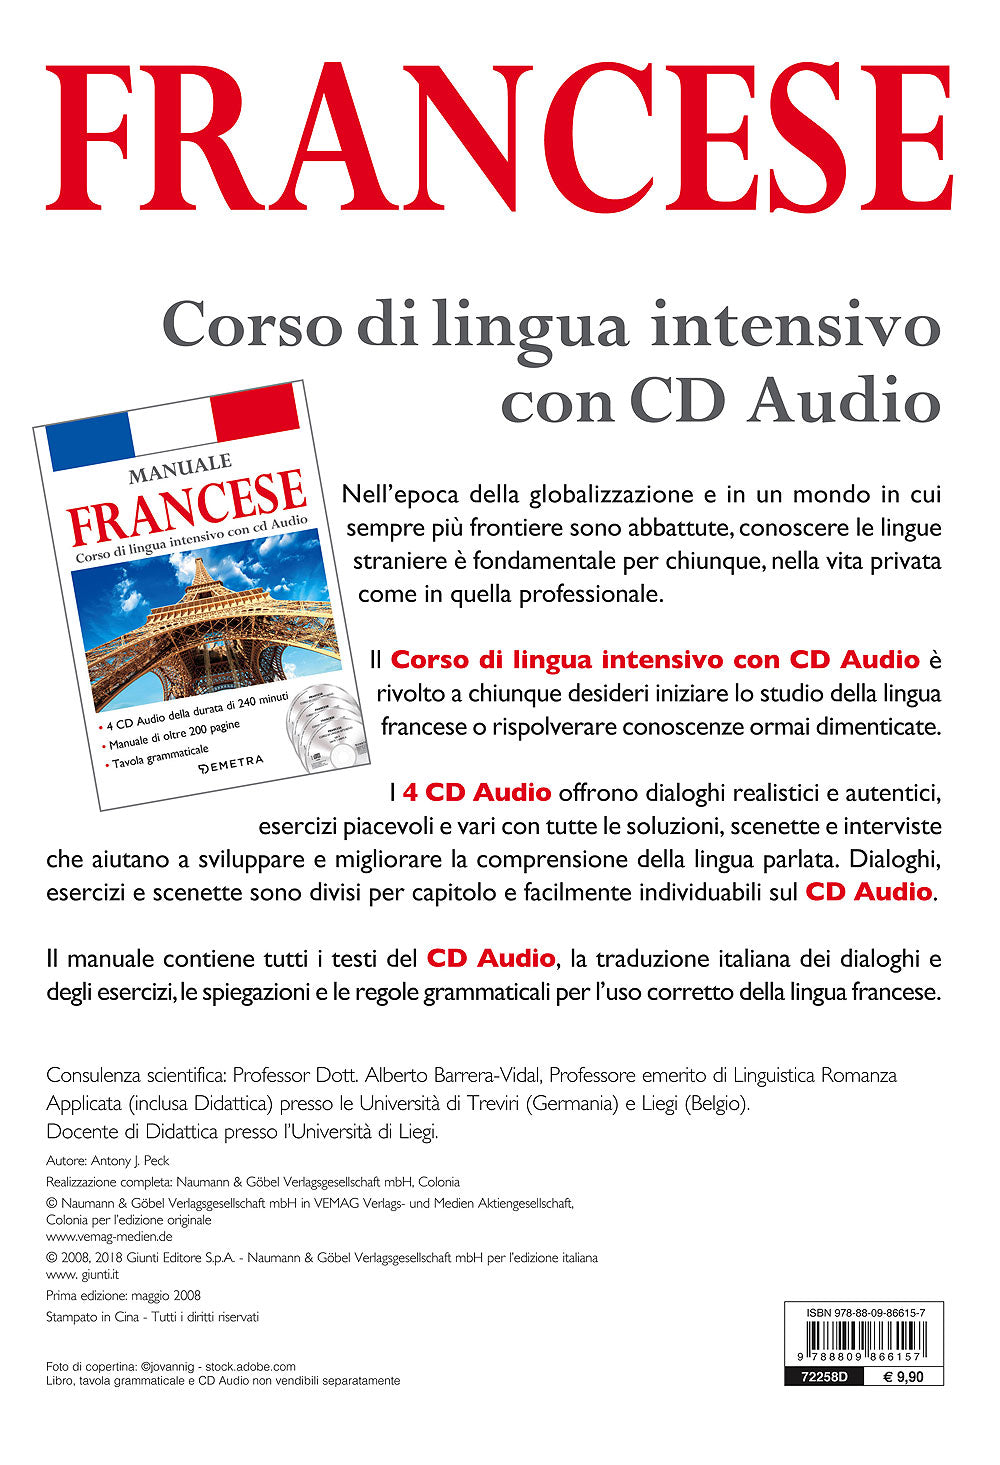 Corso di lingua Francese intensivo con CD Audio::4 CD della durata di 240 minuti - Manuale di oltre 200 pagine - Tavola grammaticale